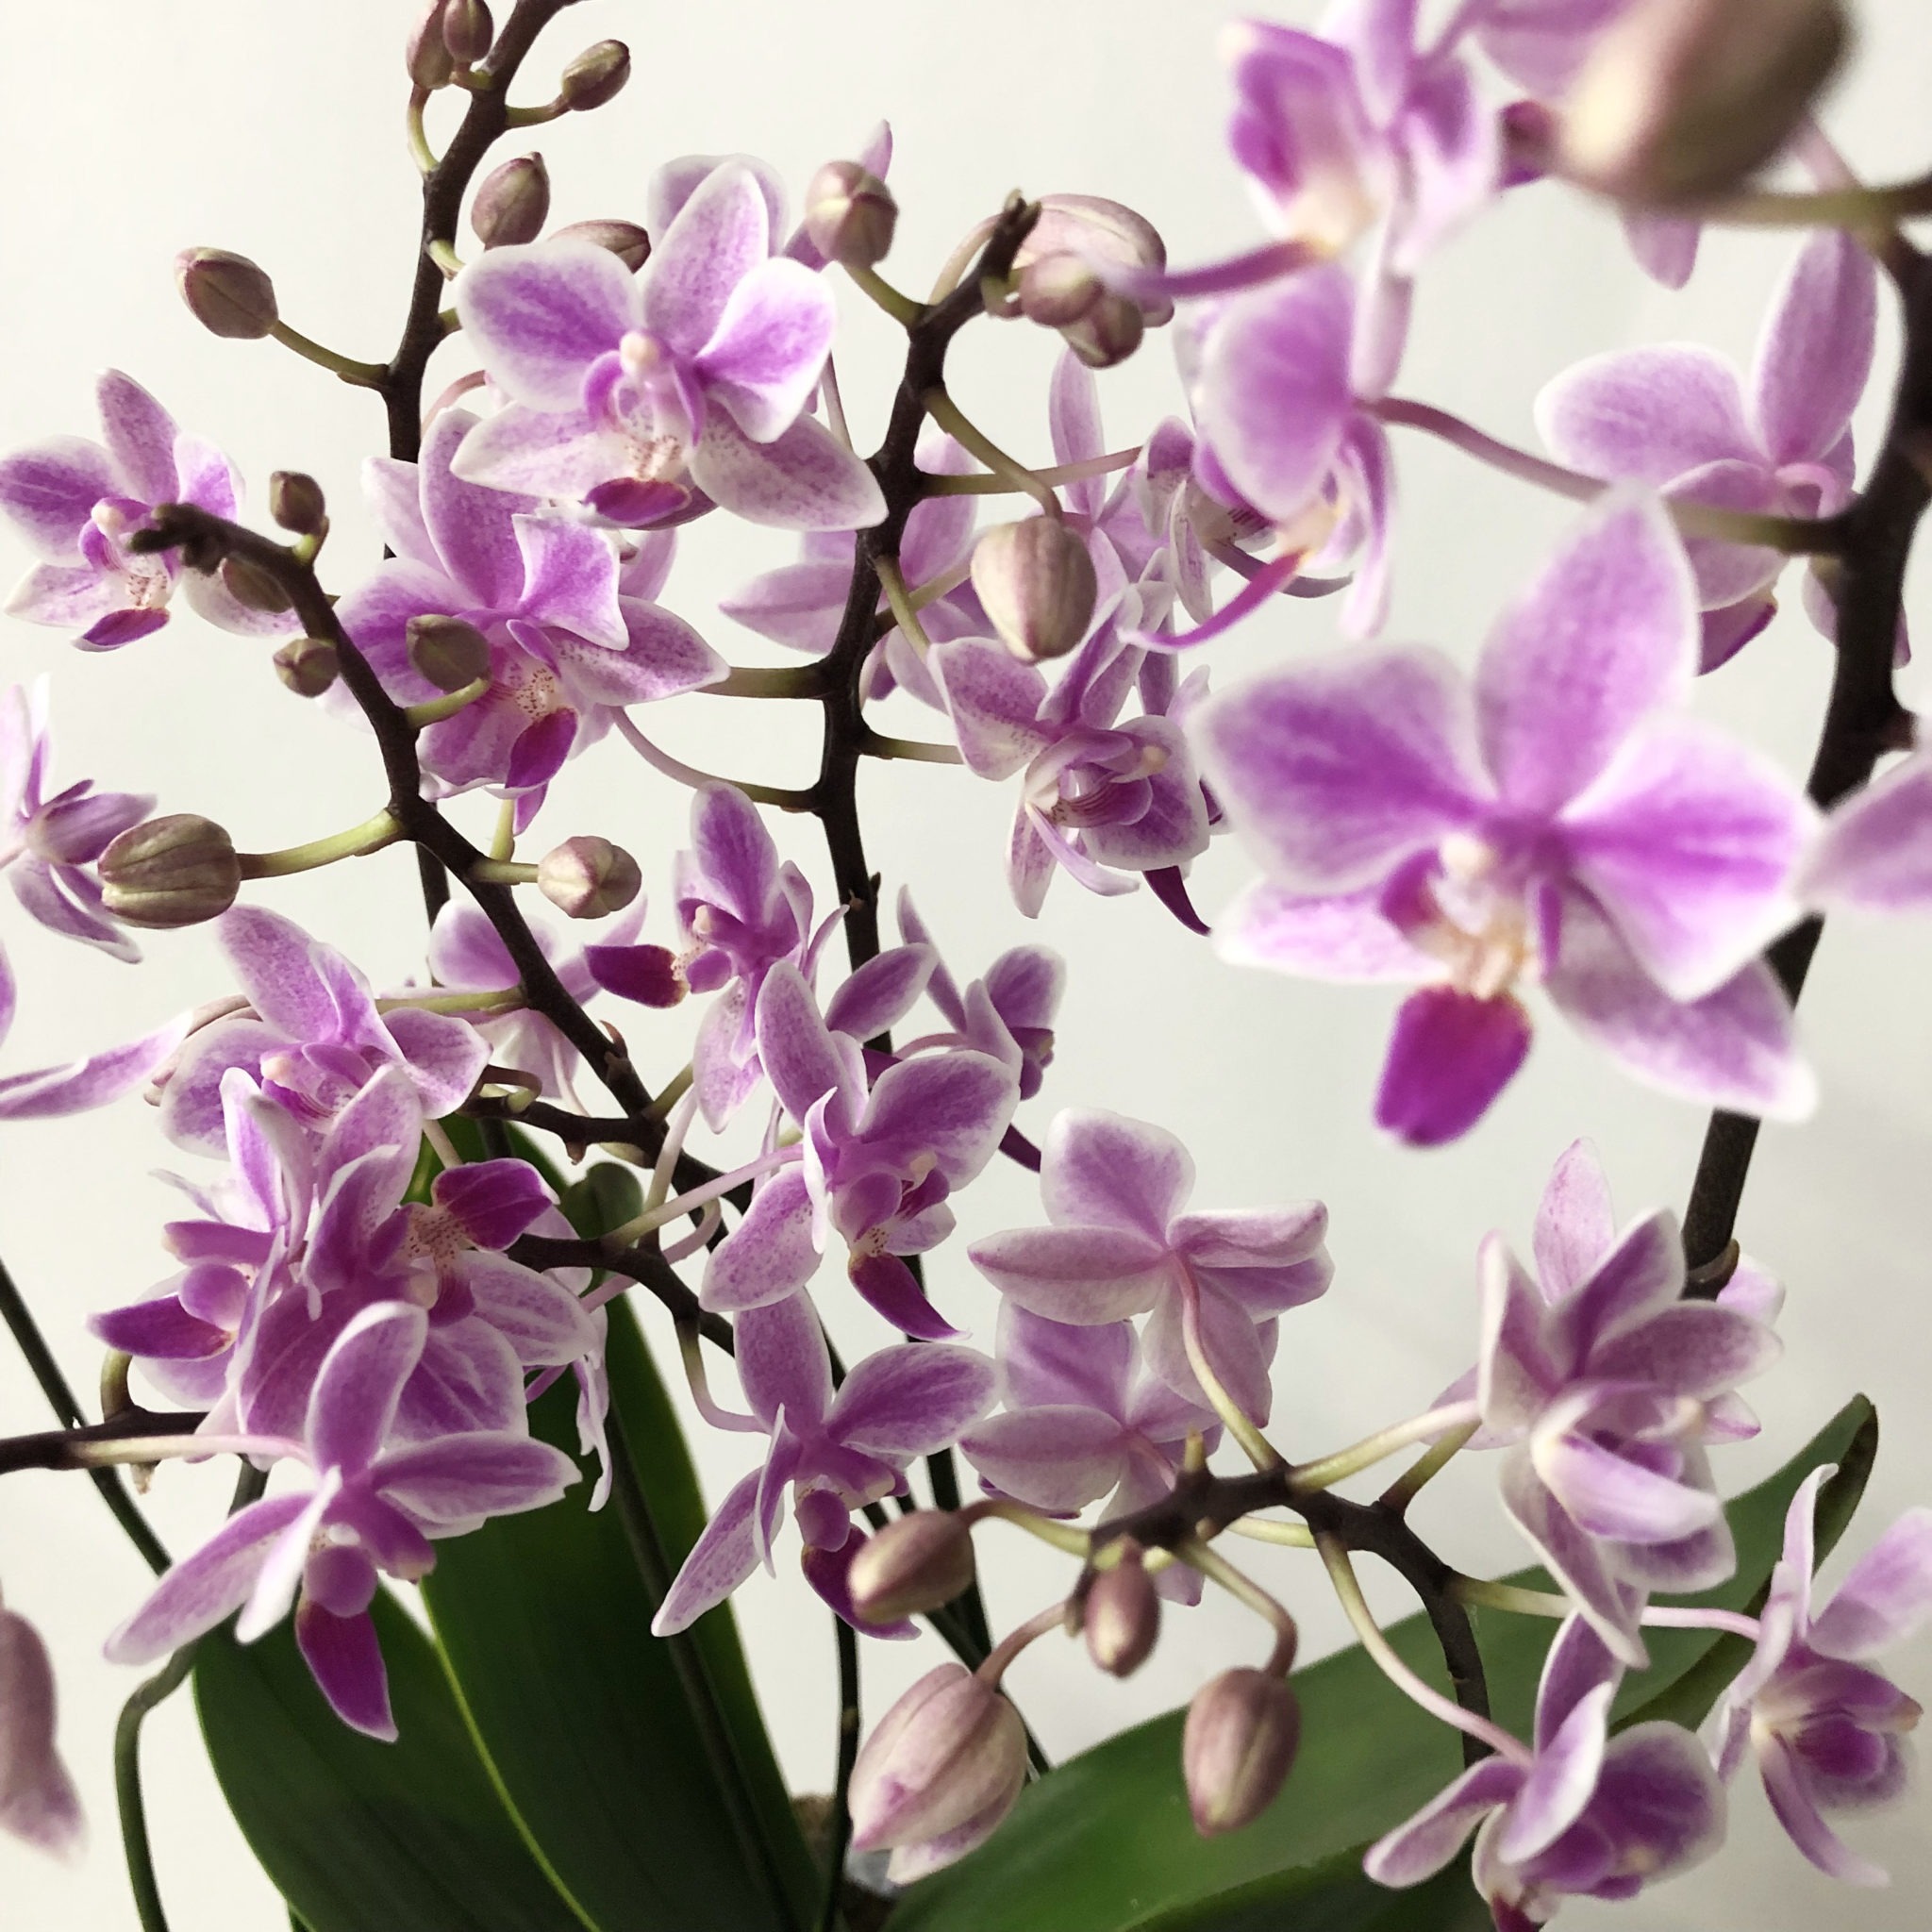 Orchidée violette, plante tropicale dotée d'une bonne résistance